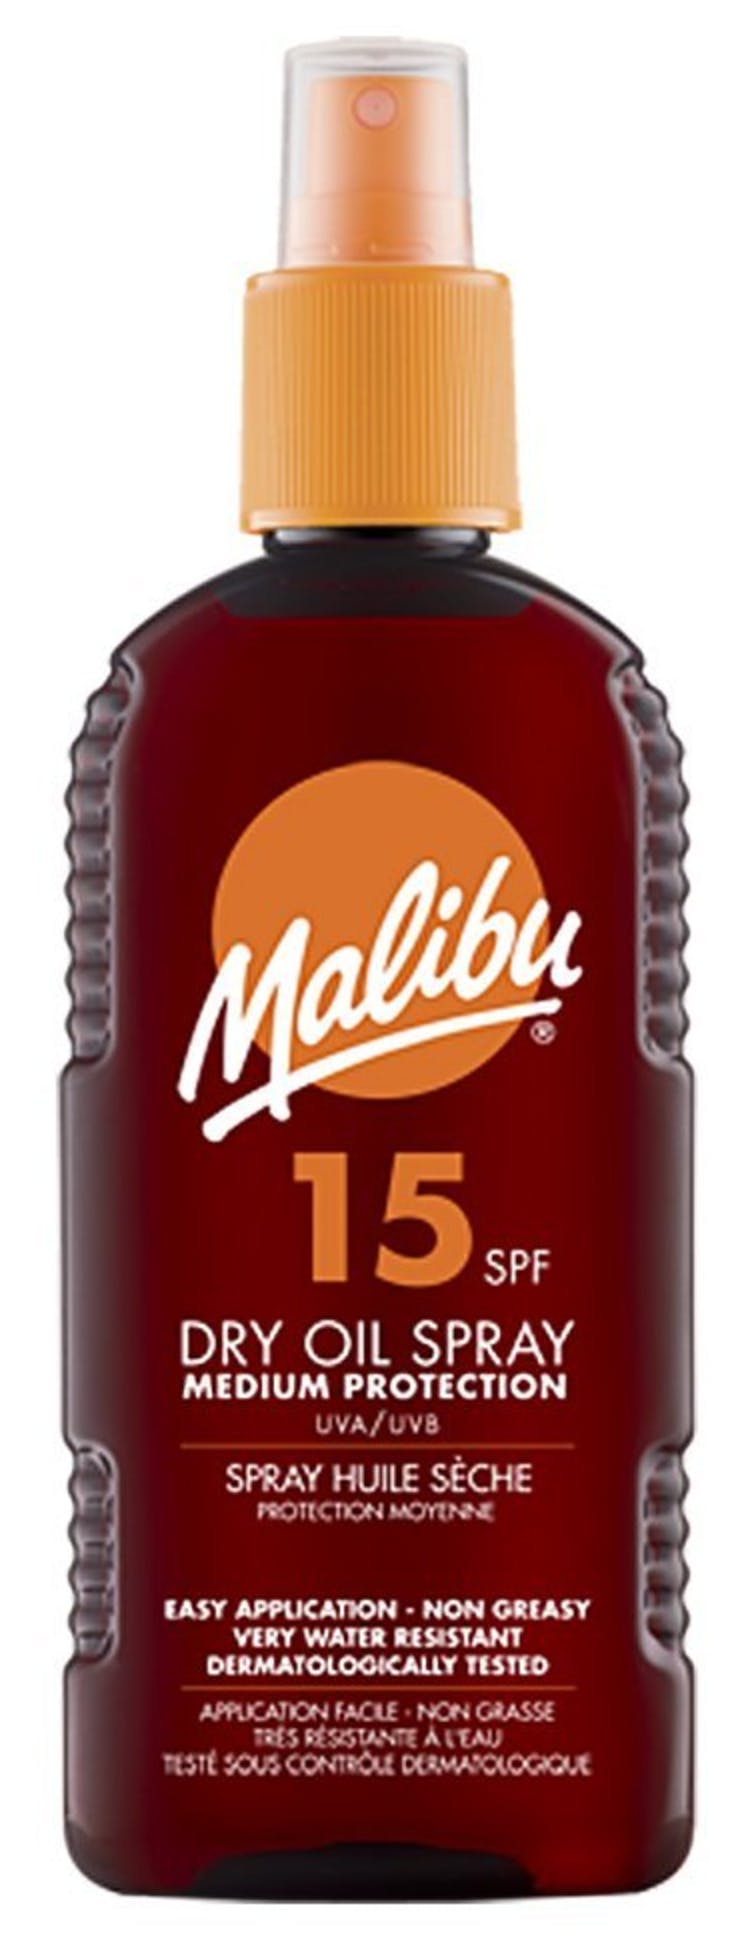 Malibu Dry Oil Spray SPF 15 200 ml